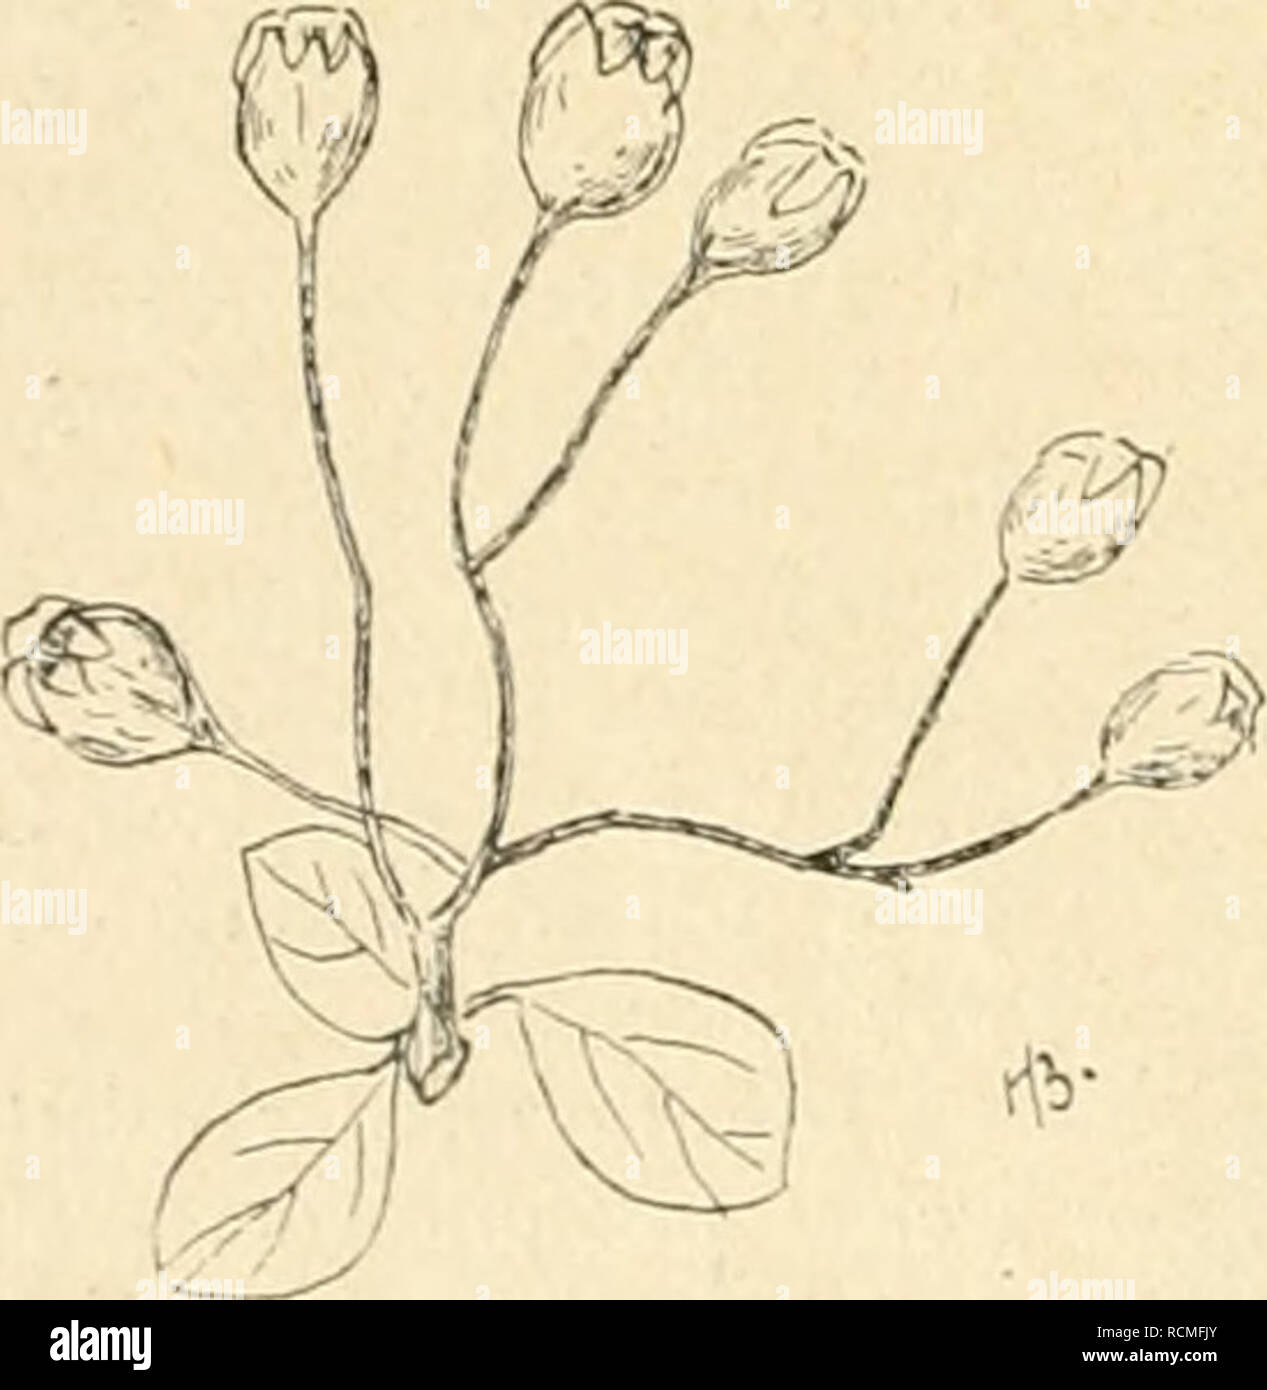 . Die Gartenwelt. Gardening. Fig. 1 A. Crataegomespilus Asnieresi Blattzweig (stark verkl.) fällt die Blüte mit der des Weißdorns zu- sammen , er- scheint aber 10 bis 12 Tage früher als bei h:^/&gt;V^^^^iJ '^ 1/ y/^l/ry^'l Cr.Dardari. Die ' —A7-is,.^r^^^C^&gt;&gt;!i U/ /&lt;^'^V rj^-^--^  Früchte, welche der Blüte ent- sprechend ein wenig größer als beim Weißdorn sind, färben sich nicht rot, son- dern nehmen auffälligerweise die lederbraune Mispelfarbe an. Der Kelch ist zu- rückgeschlagen , der Frucht an- liegend. (Fig. 1, D.) Aus der Beschreibung geht also hervor, daß C Asnieresi viele  Stock Photo